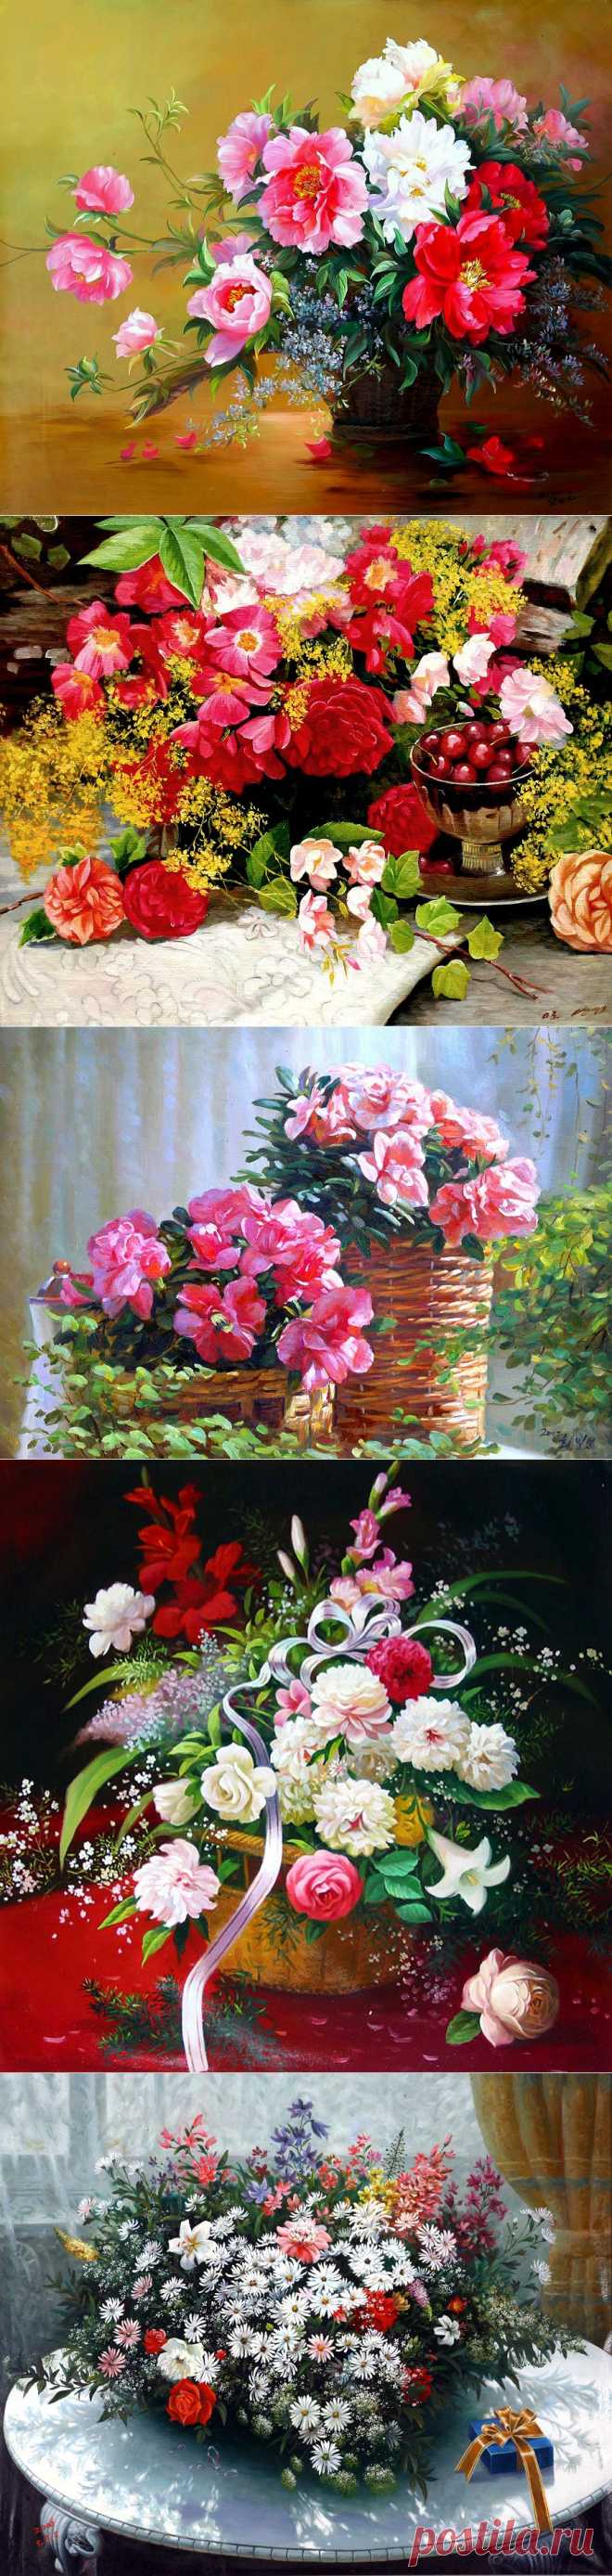 Цветы и натюрморты в живописи корейских художников | РОЗЫ